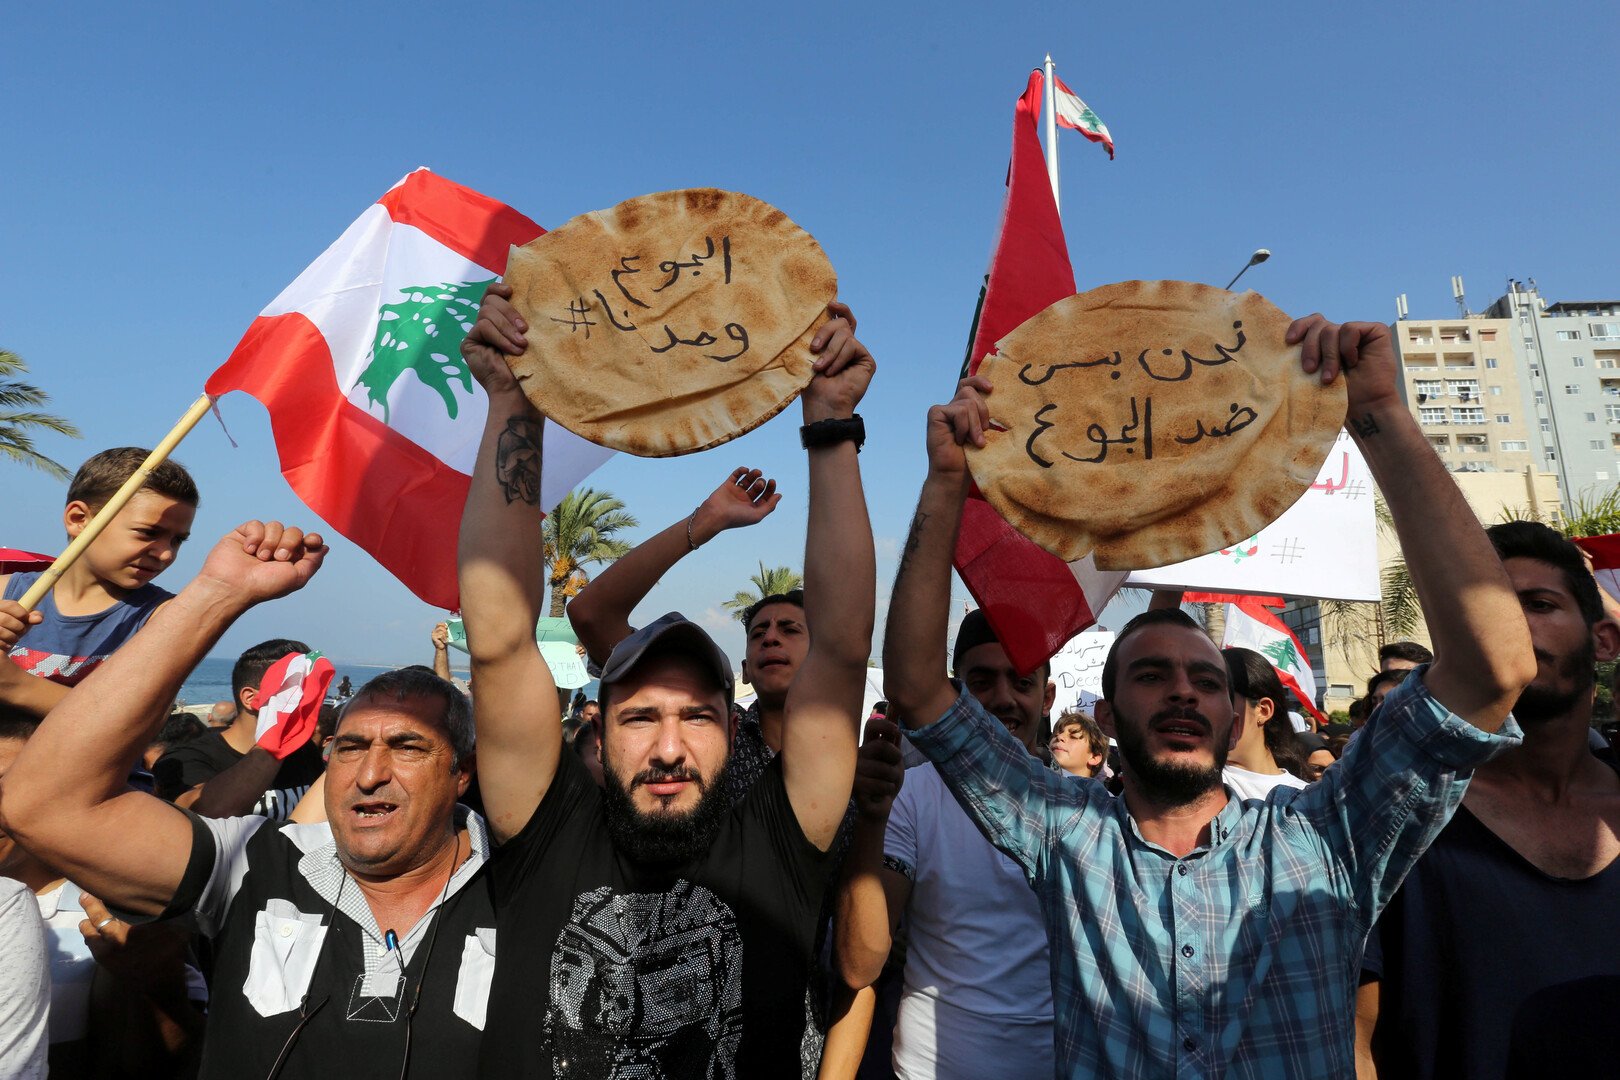 دخول احتجاجات لبنان يومها الـ13 وسط مخاوف من أزمة طحين ومحروقات